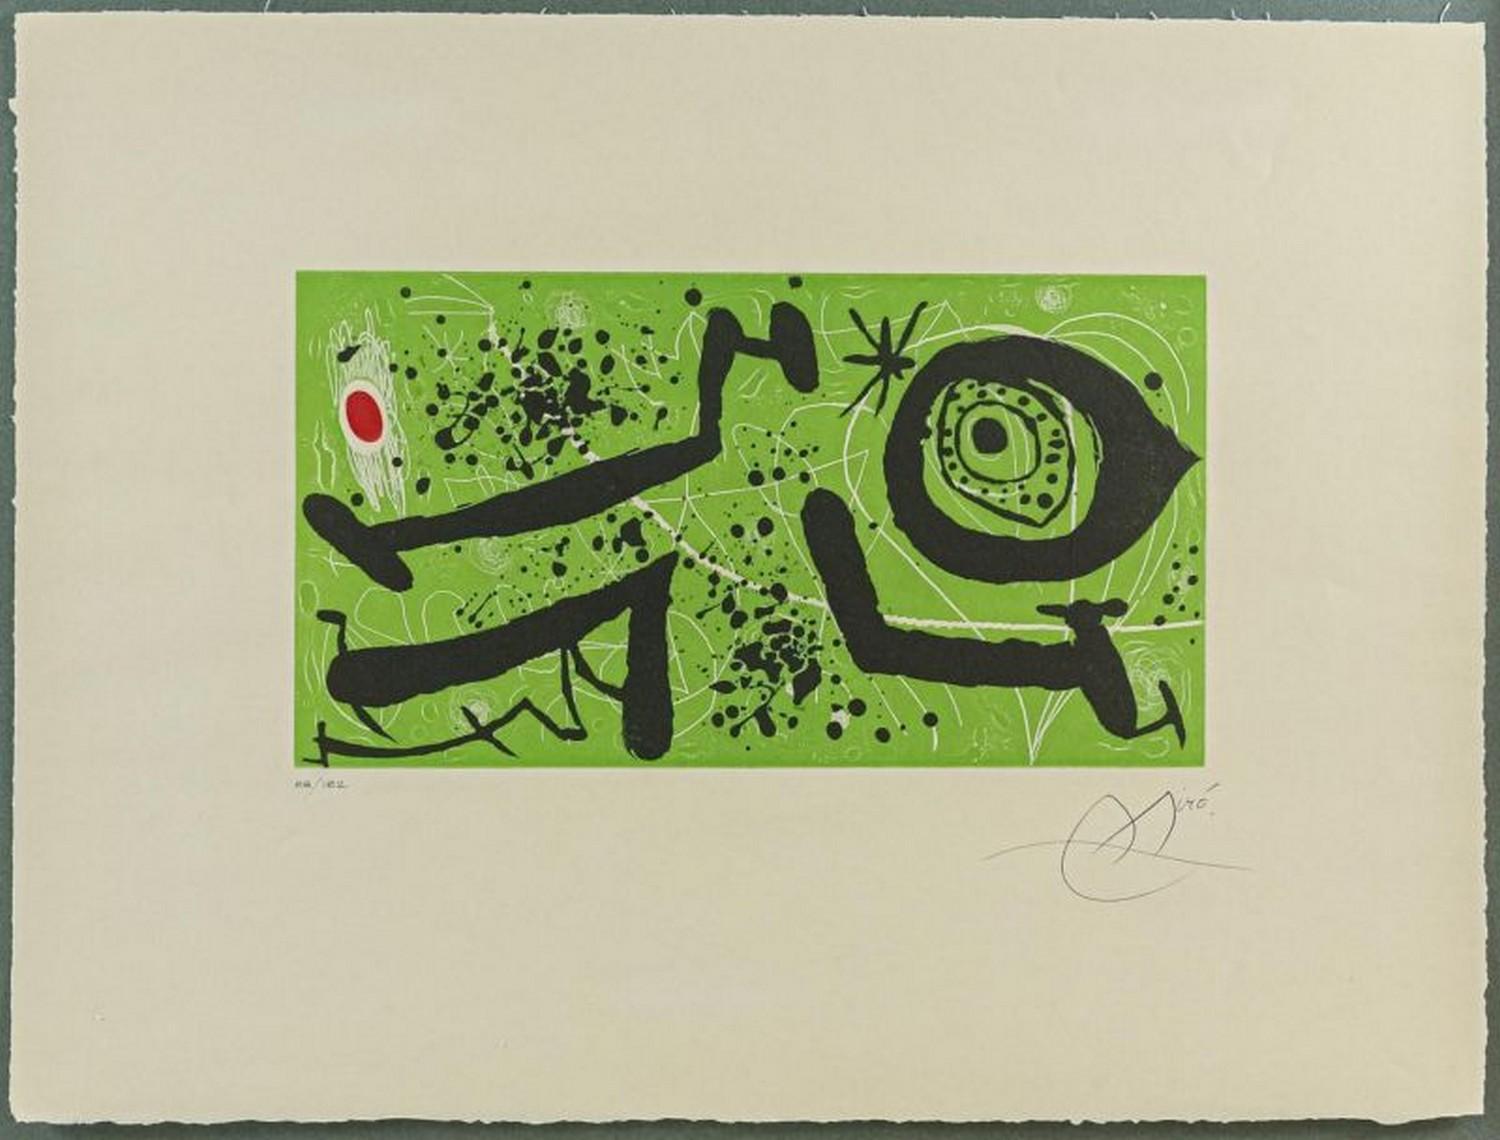 Joan Miró Abstract Print - Picasso I Els Reventos 